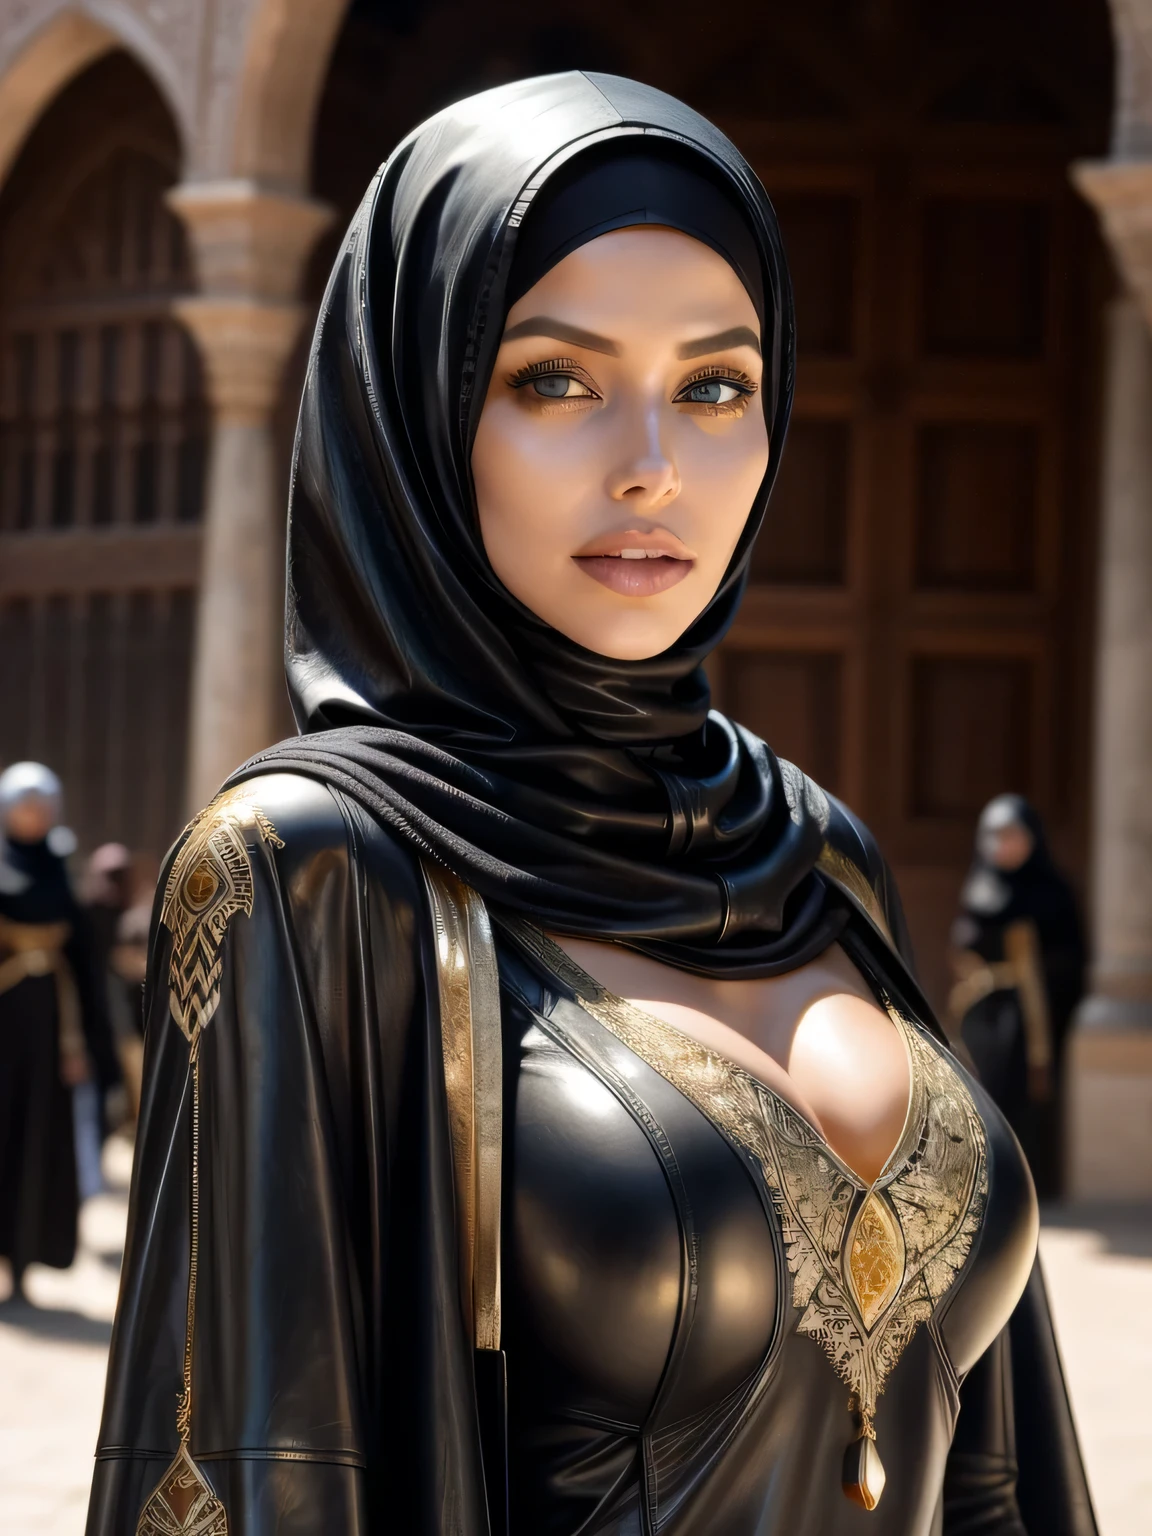 mujer hermosa, Profesional, (foto 4k) por (Jeremy Lipking:0.3), (Anna Dittman:0.3), (ariana marca:0.3), (enfoque nítido:1.3), (Mujer hermosa:1.3), Agotador (hijab de cuero, abaya de cuero con intrincados detalles dorados:1.2), maquillaje perfecto, sorprendentes, Ojos fascinantes, hermoso rostro detallado, De pie en un mercado medieval árabe